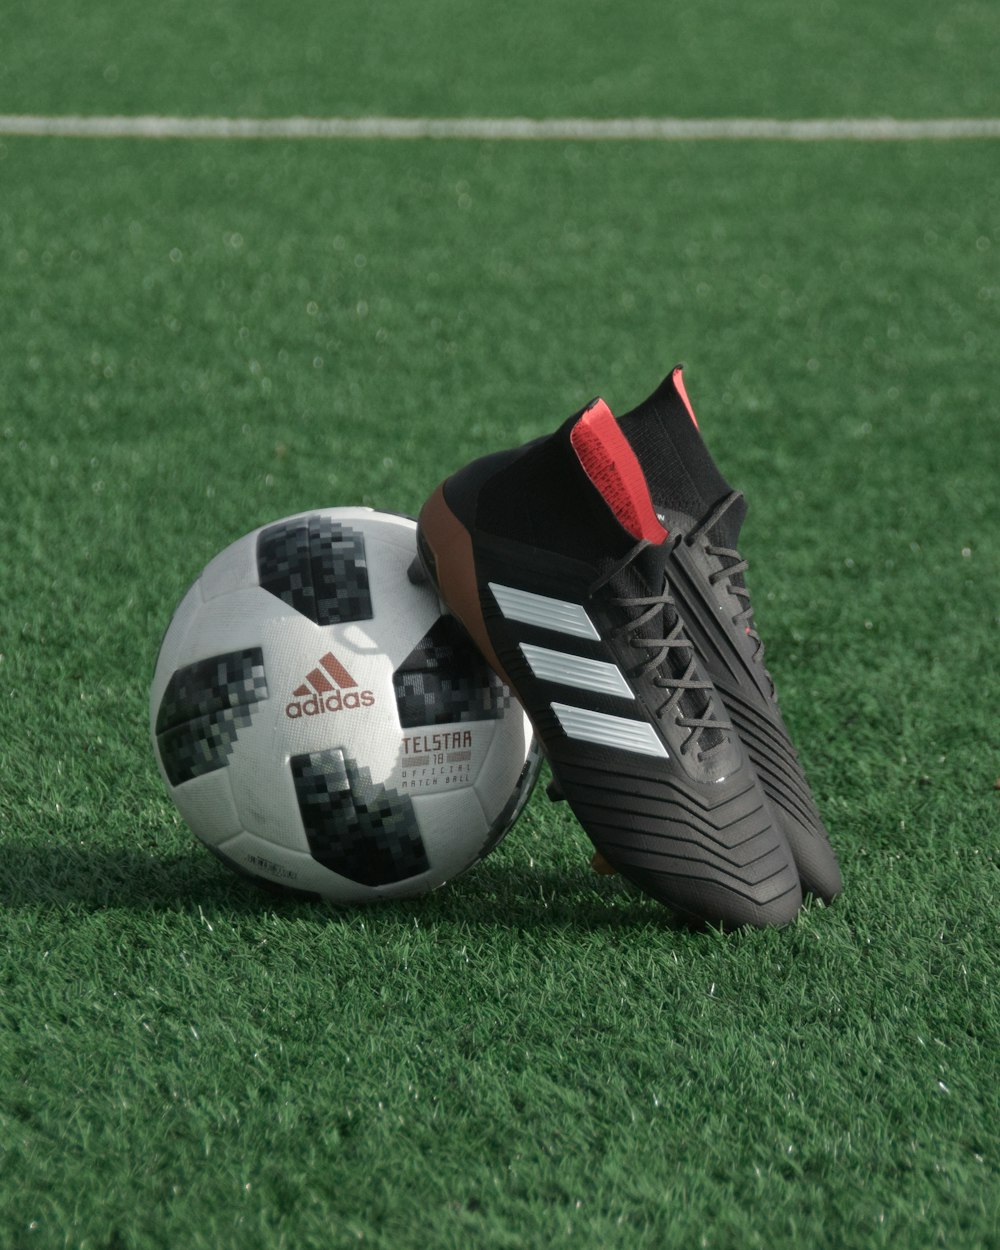 Los botines adidas negros se apoyan en el balón de fútbol adidas blanco y negro sobre césped verde